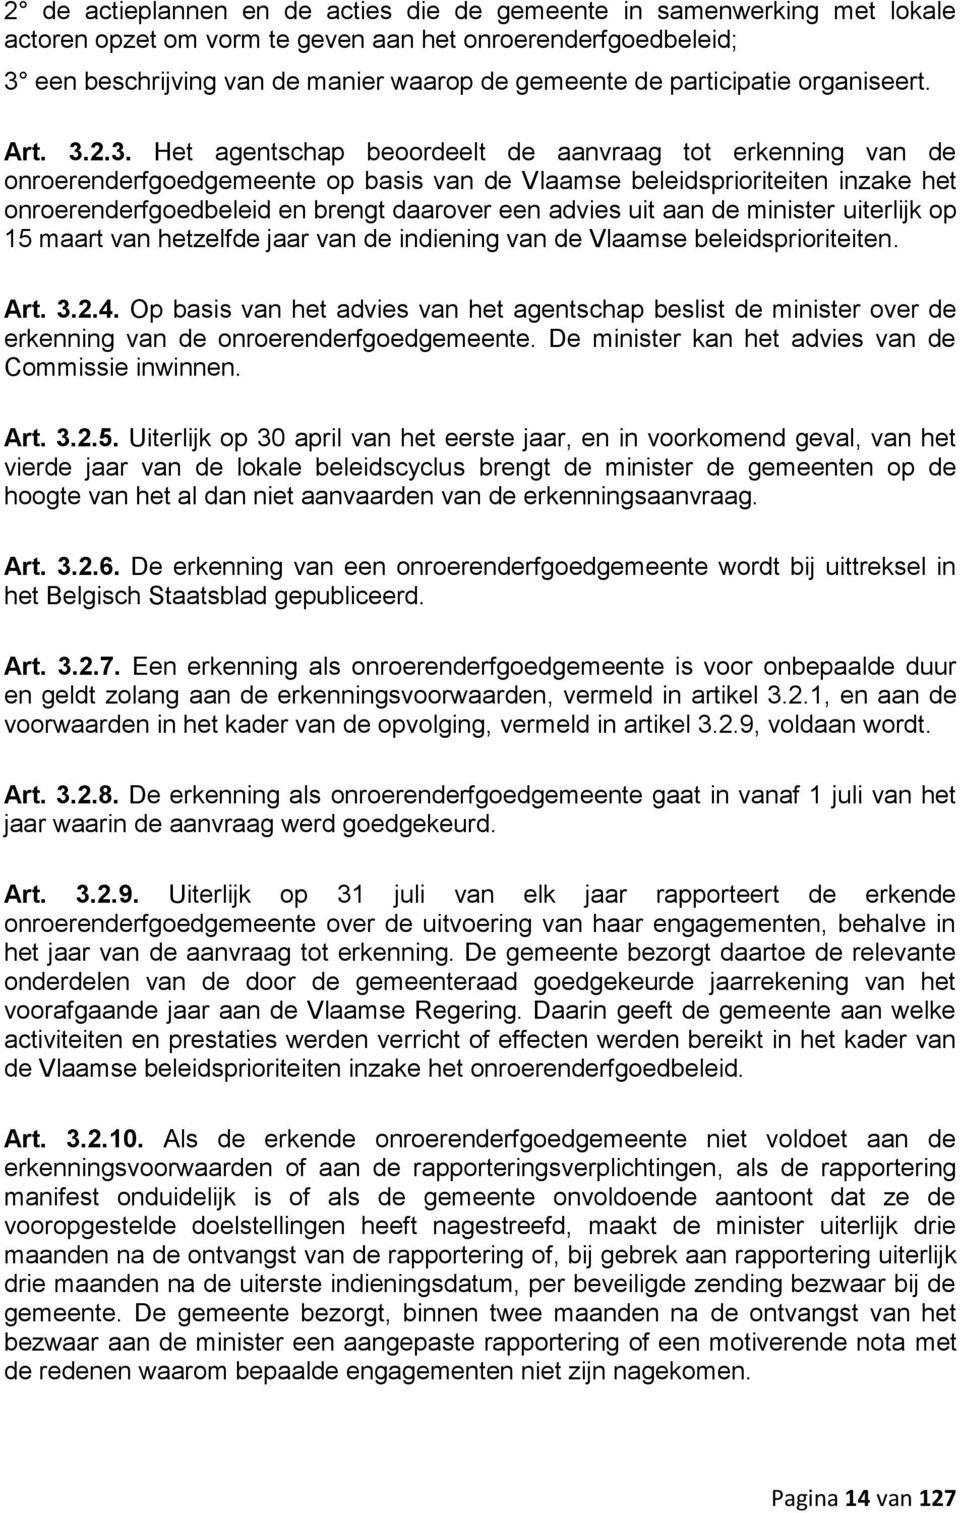 2.3. Het agentschap beoordeelt de aanvraag tot erkenning van de onroerenderfgoedgemeente op basis van de Vlaamse beleidsprioriteiten inzake het onroerenderfgoedbeleid en brengt daarover een advies